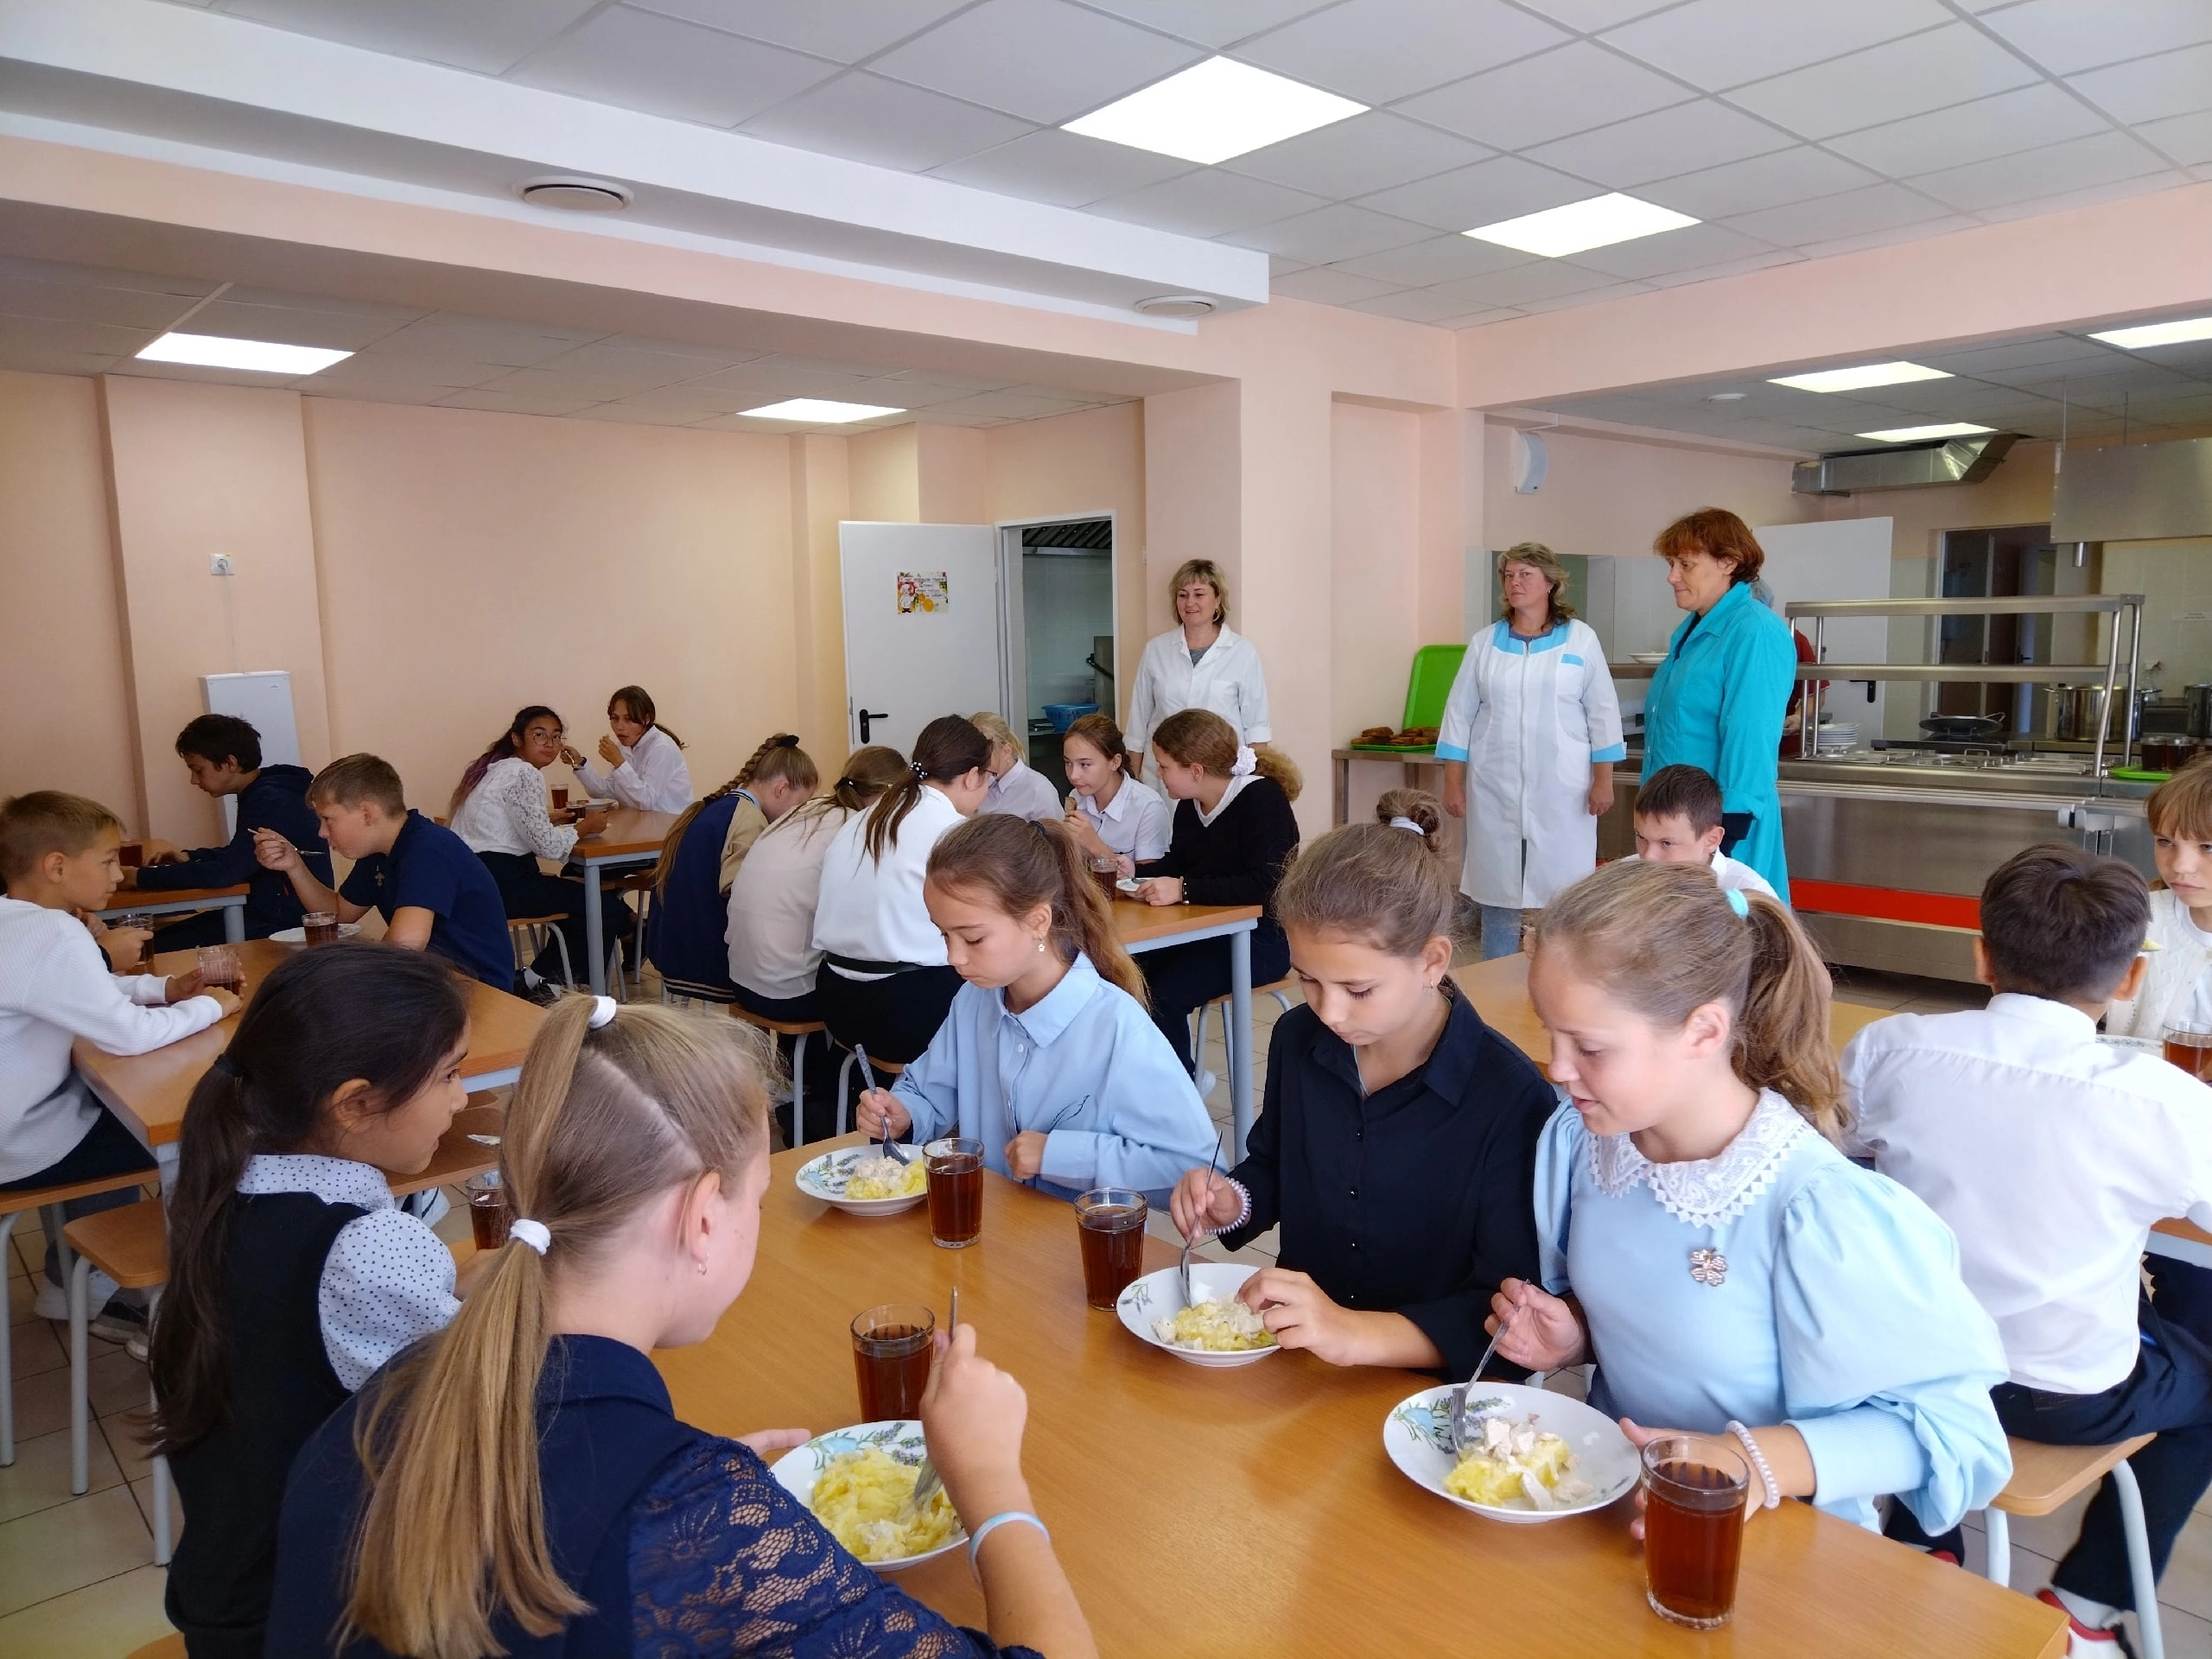 29 сентября, в МБОУ Мосоловская СОШ им. В.М. Фомина  представители родительского комитета осуществили контроль за питанием в школьной столовой.